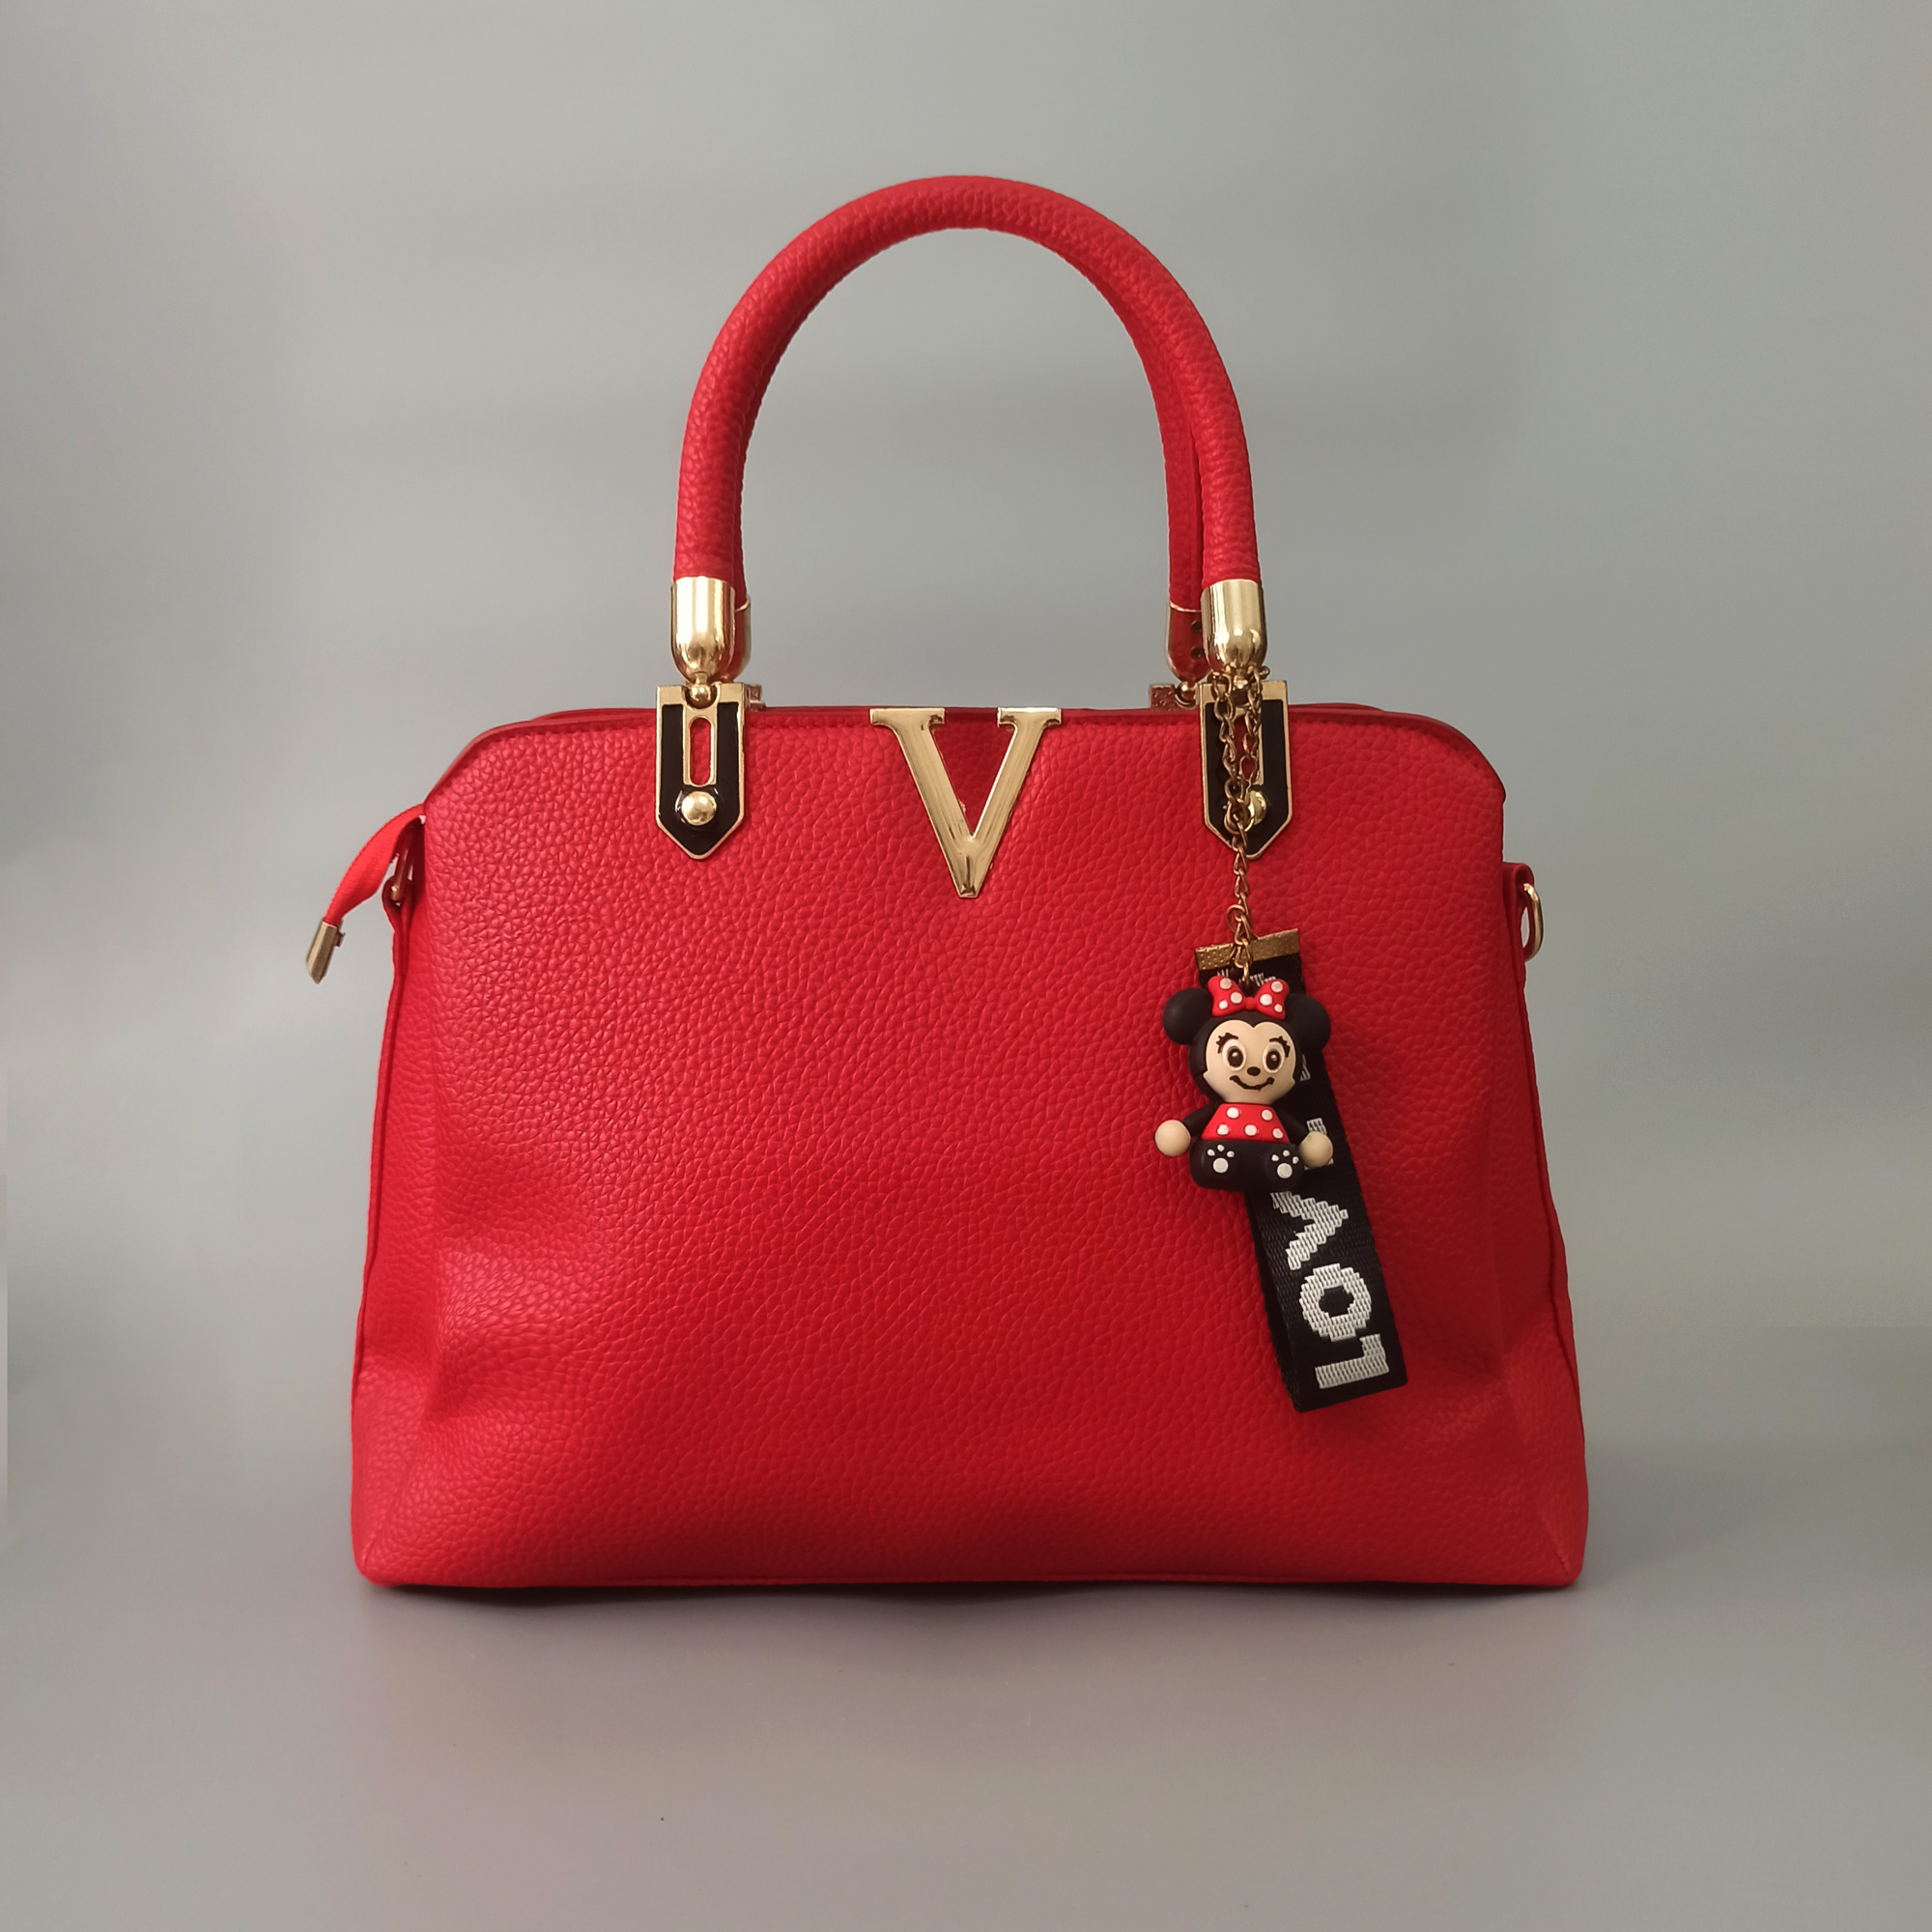 Túi xách nữ công sở màu đỏ và hồng